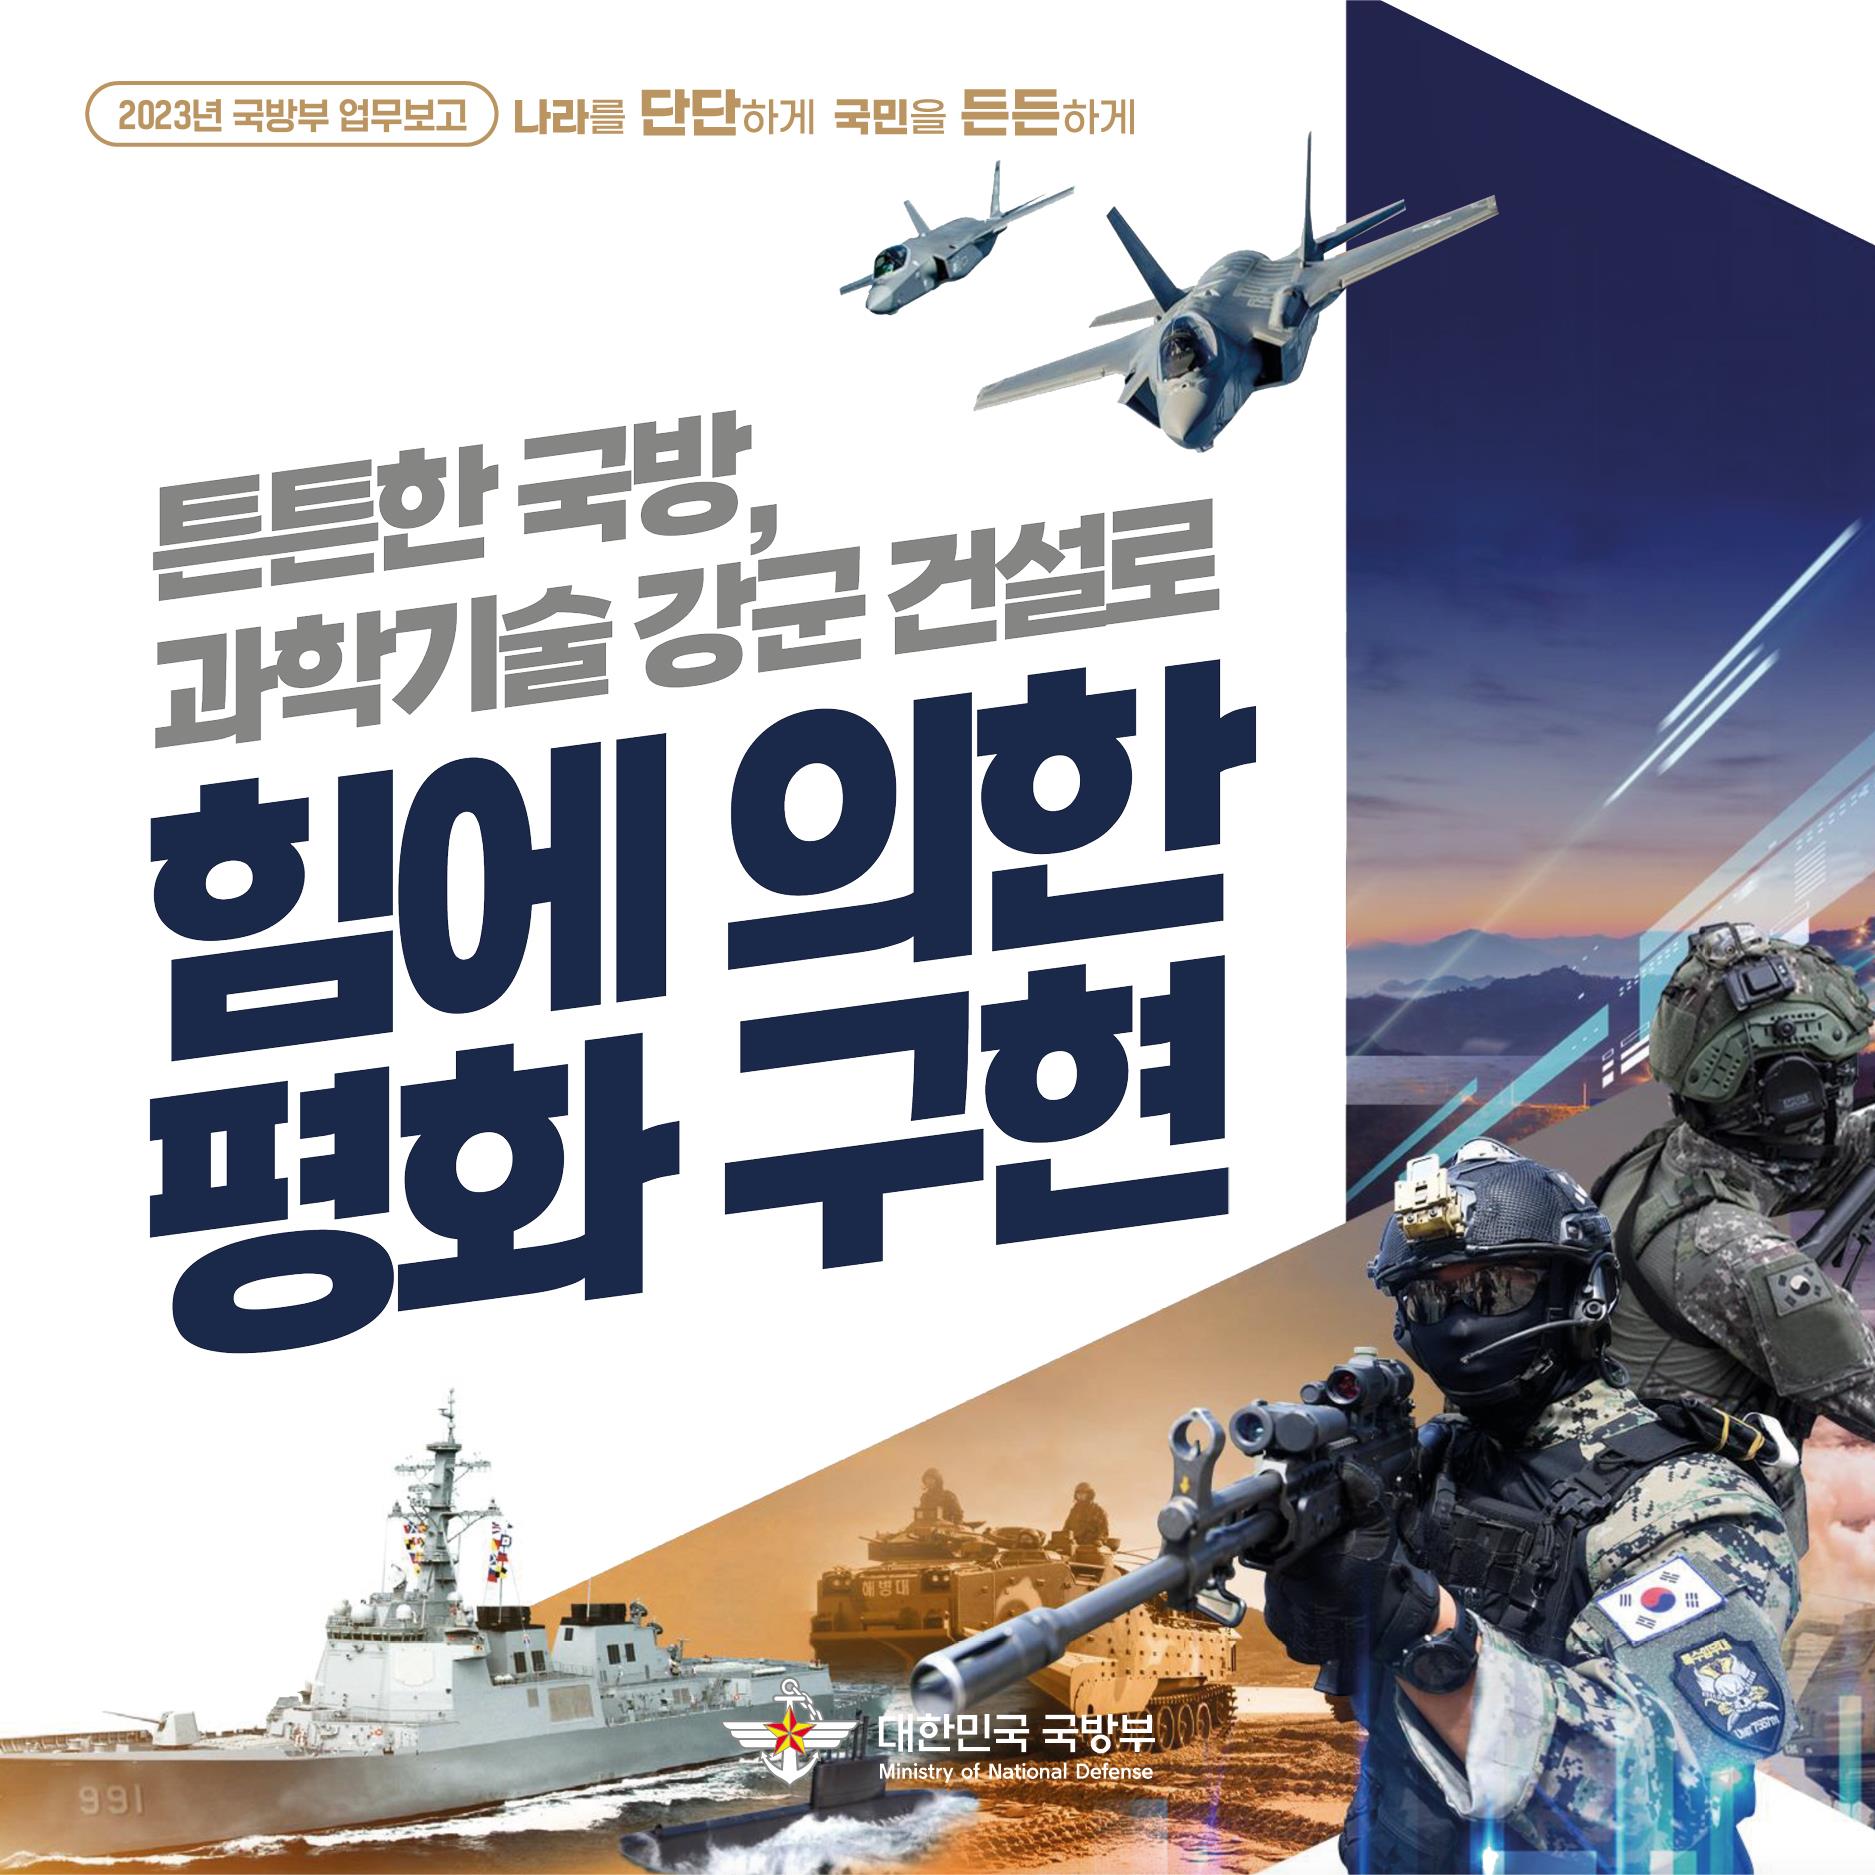 '튼튼한 국방, 과학기술 강군' 건설로 '힘에 의한 평화' 구현